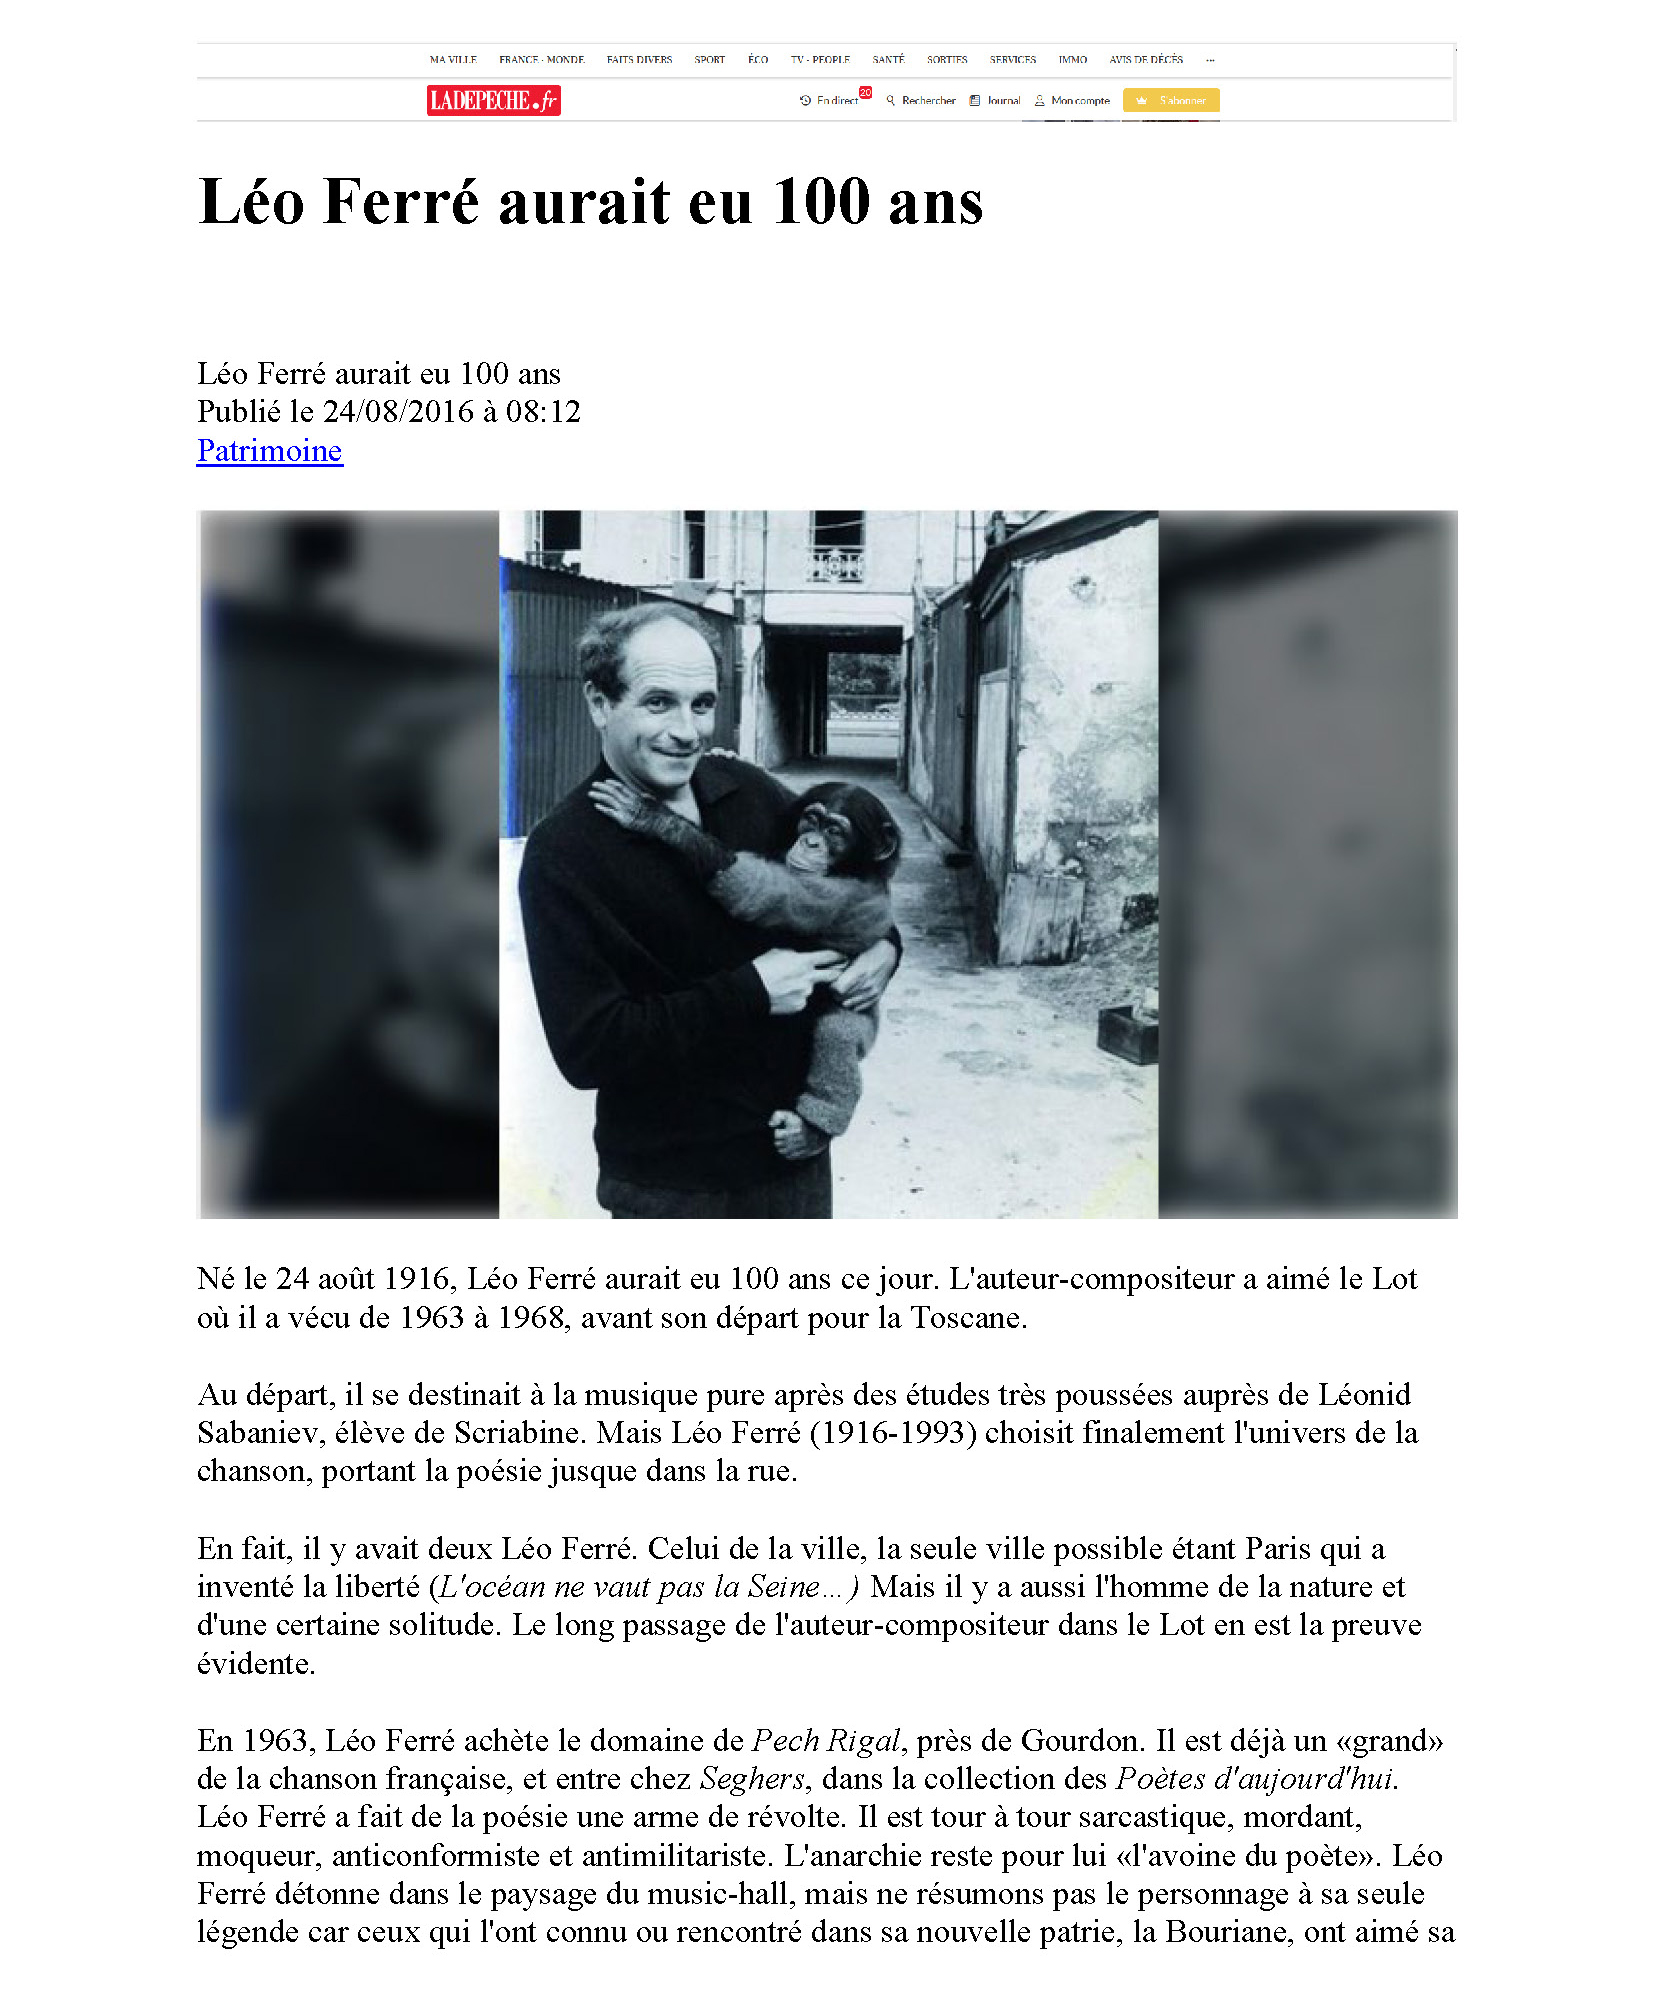 24/08/2016 La dépêche Léo Ferré aurait eu 100 ans